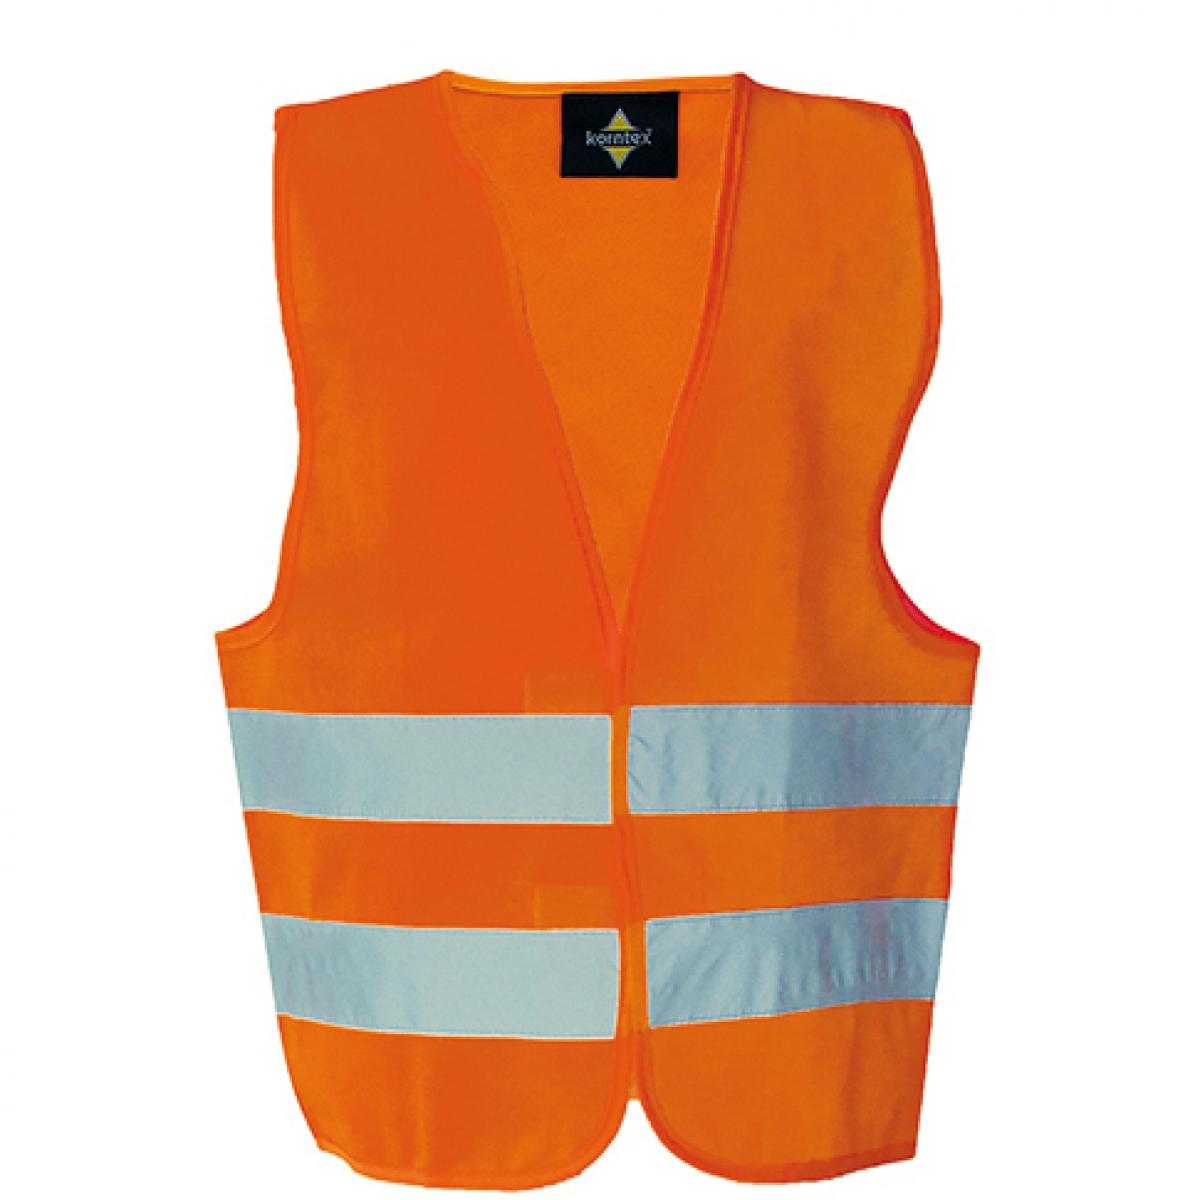 Hersteller: Korntex Herstellernummer: KW Artikelbezeichnung: Kinderweste Safety Vest for children EN1150 Farbe: Signal Orange